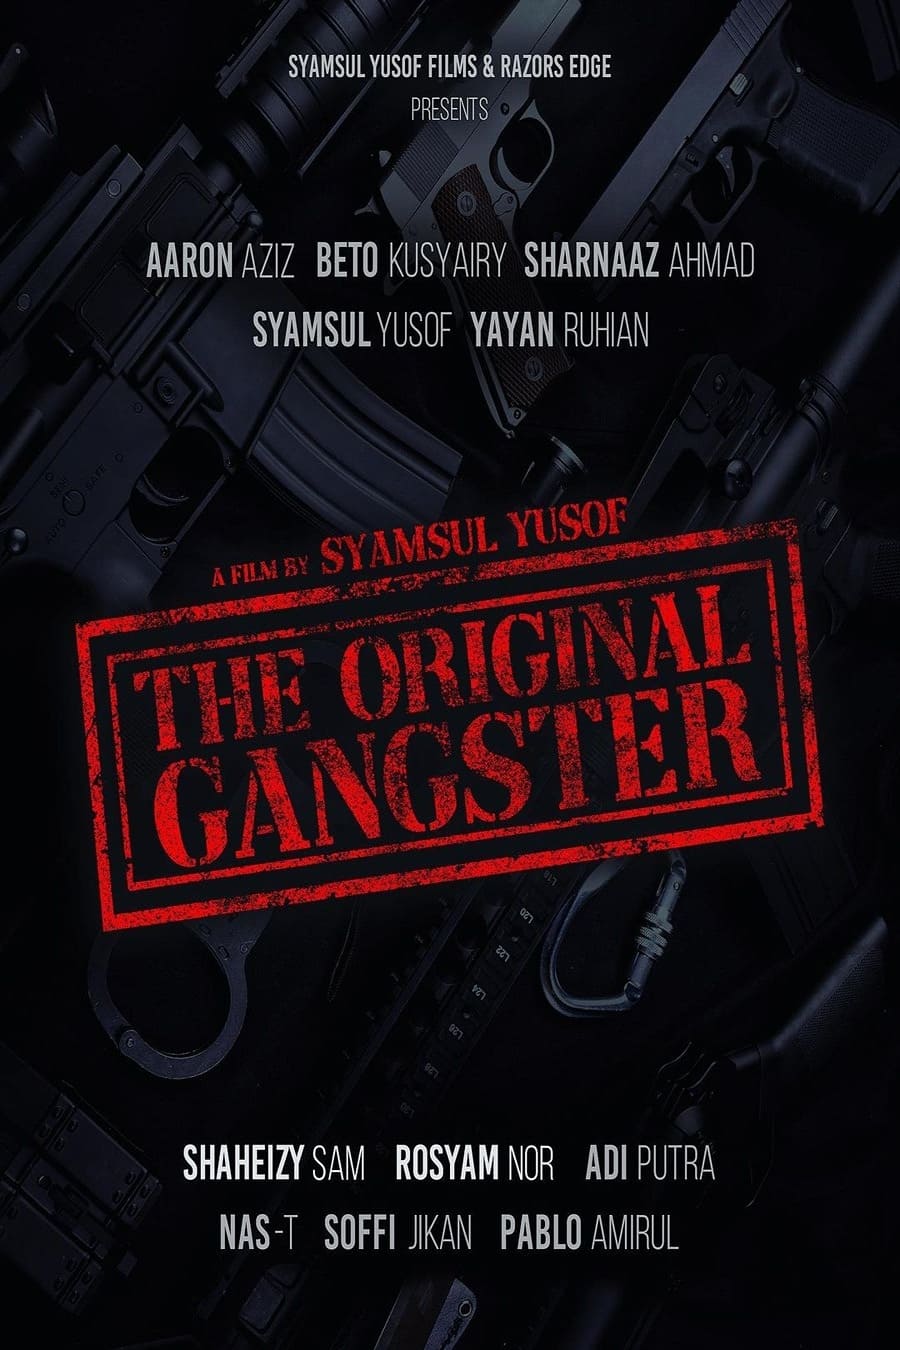 The Original Gangster